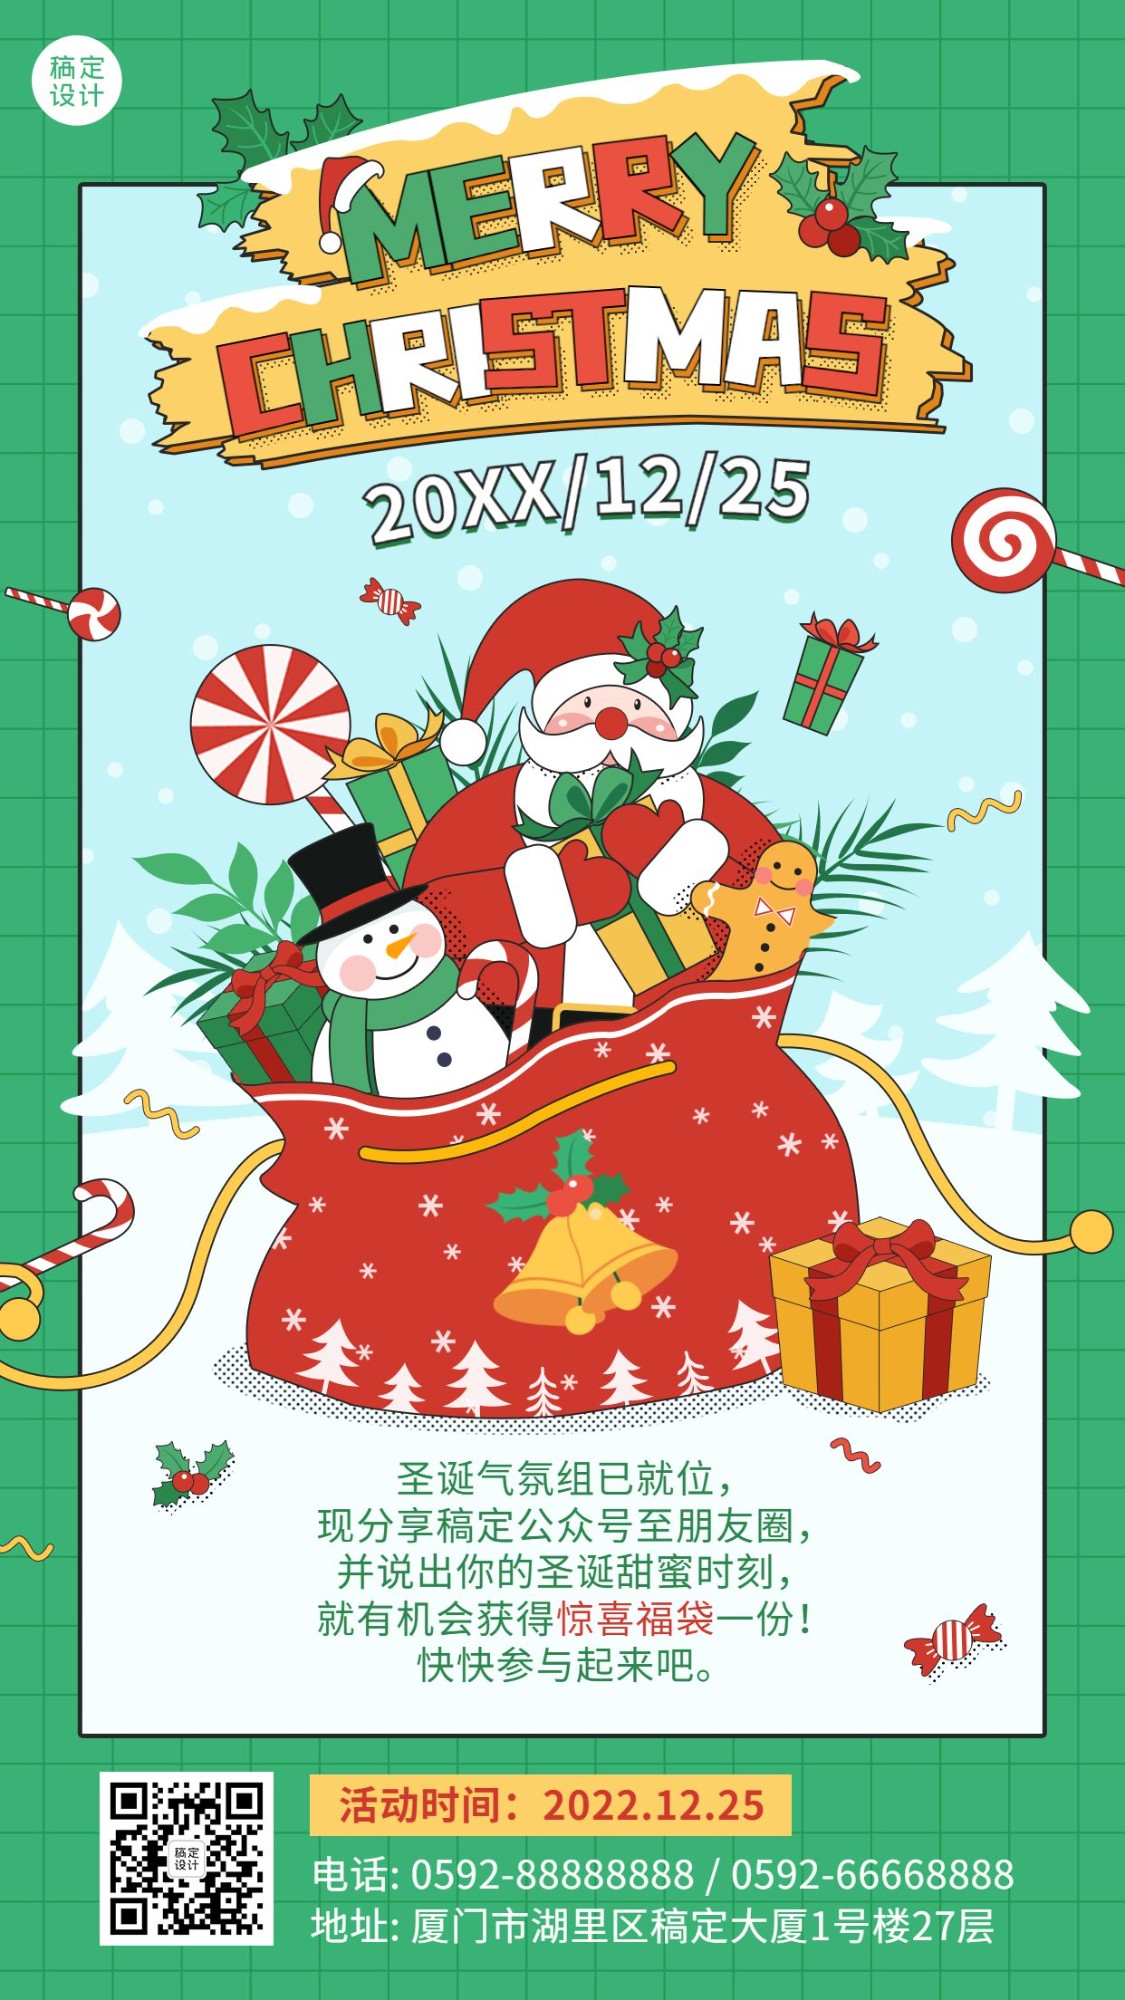 圣诞节活动福利祝福插画手机海报